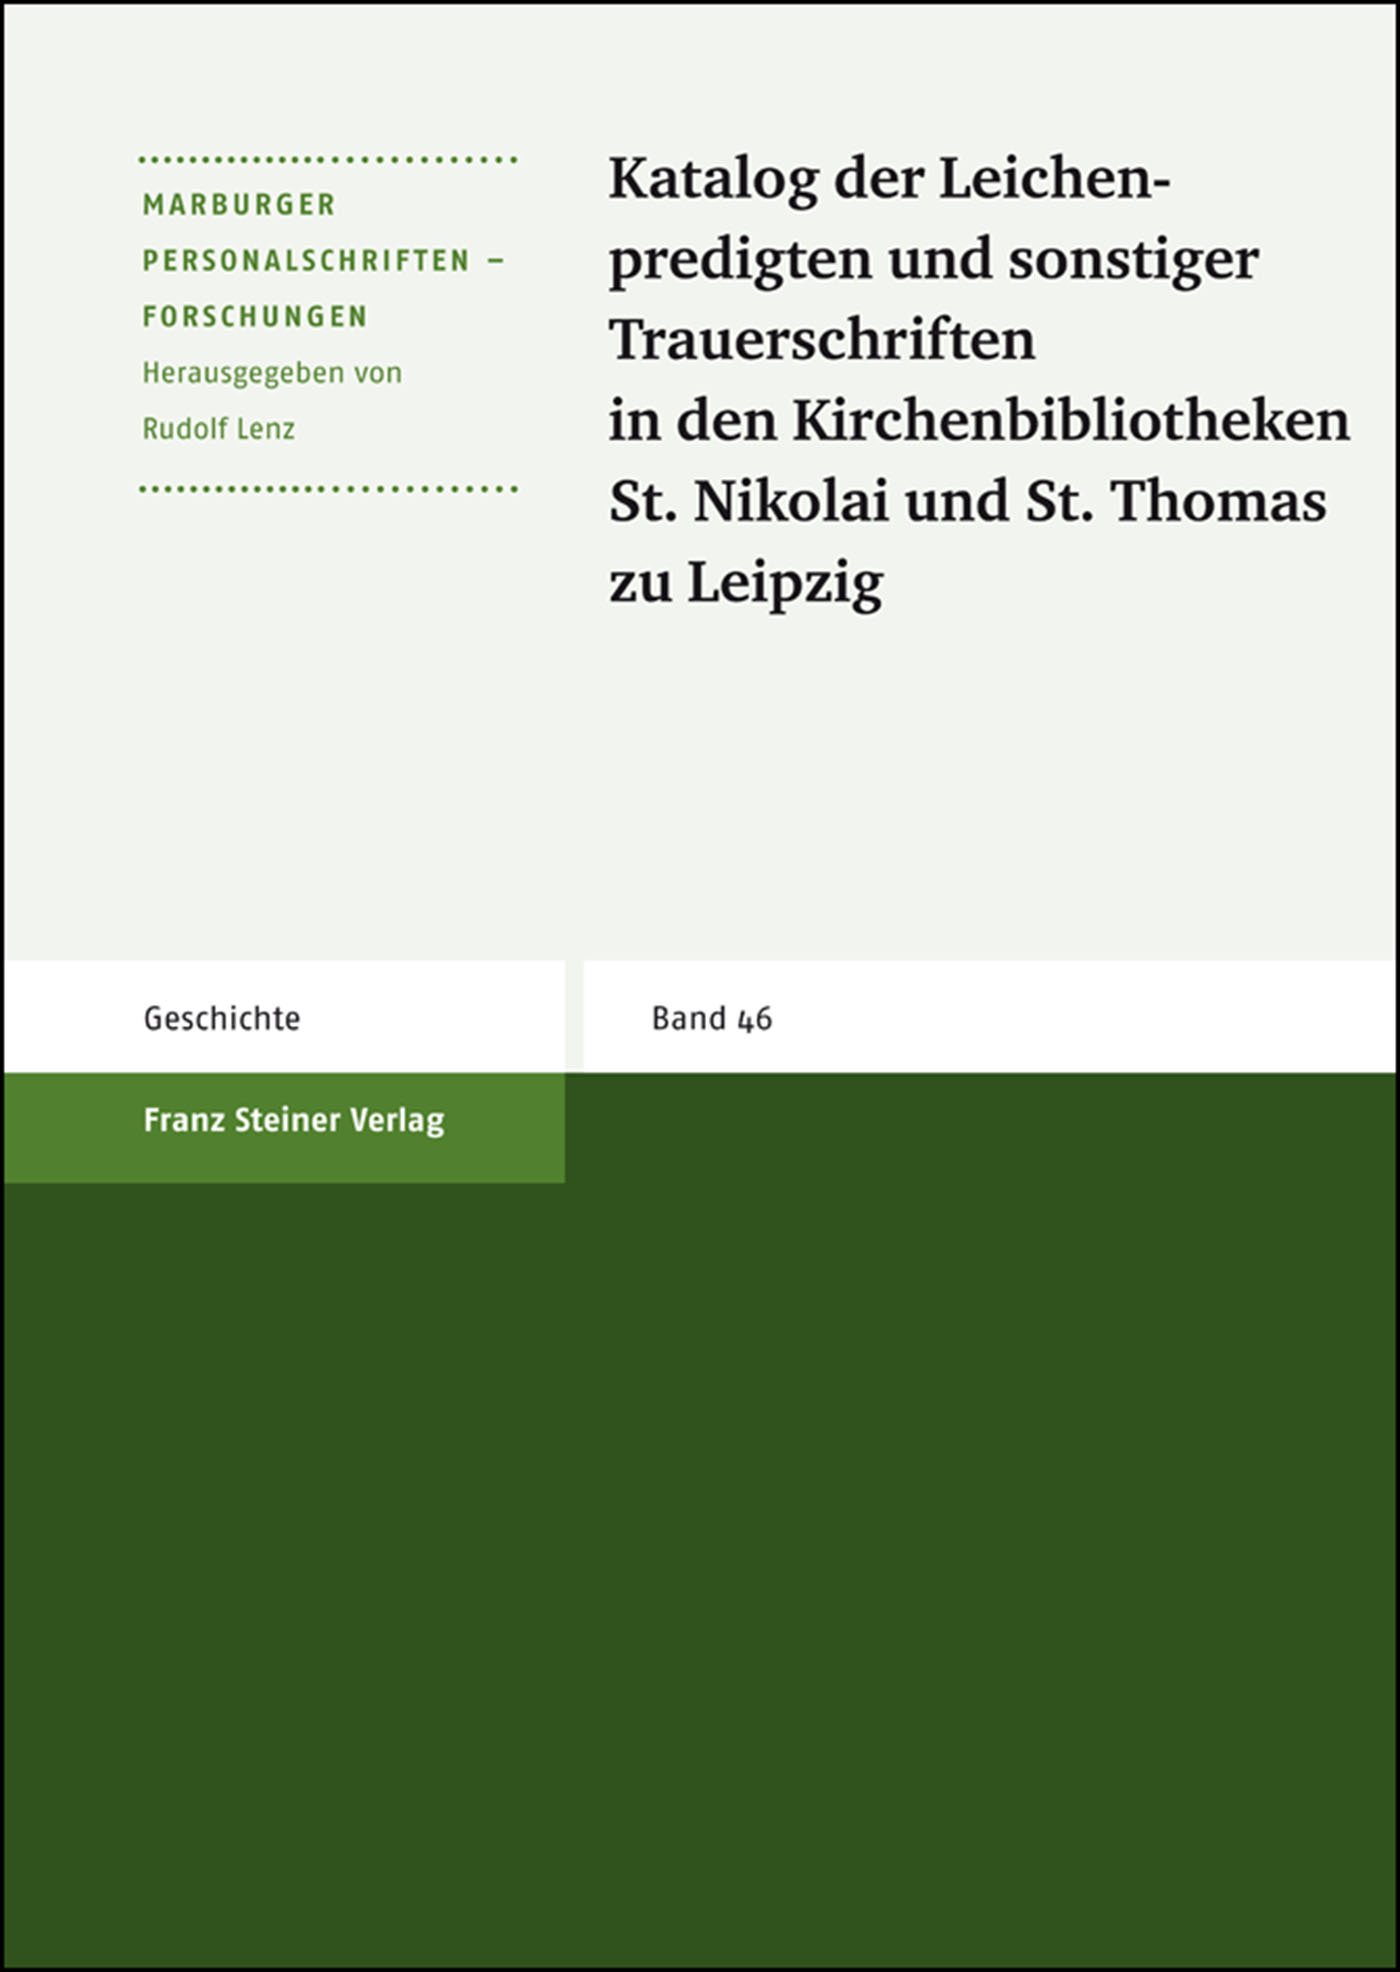 Katalog der Leichenpredigten und sonstiger Trauerschriften in den Kirchenbibliotheken St. Nikolai und St. Thomas zu Leipzig